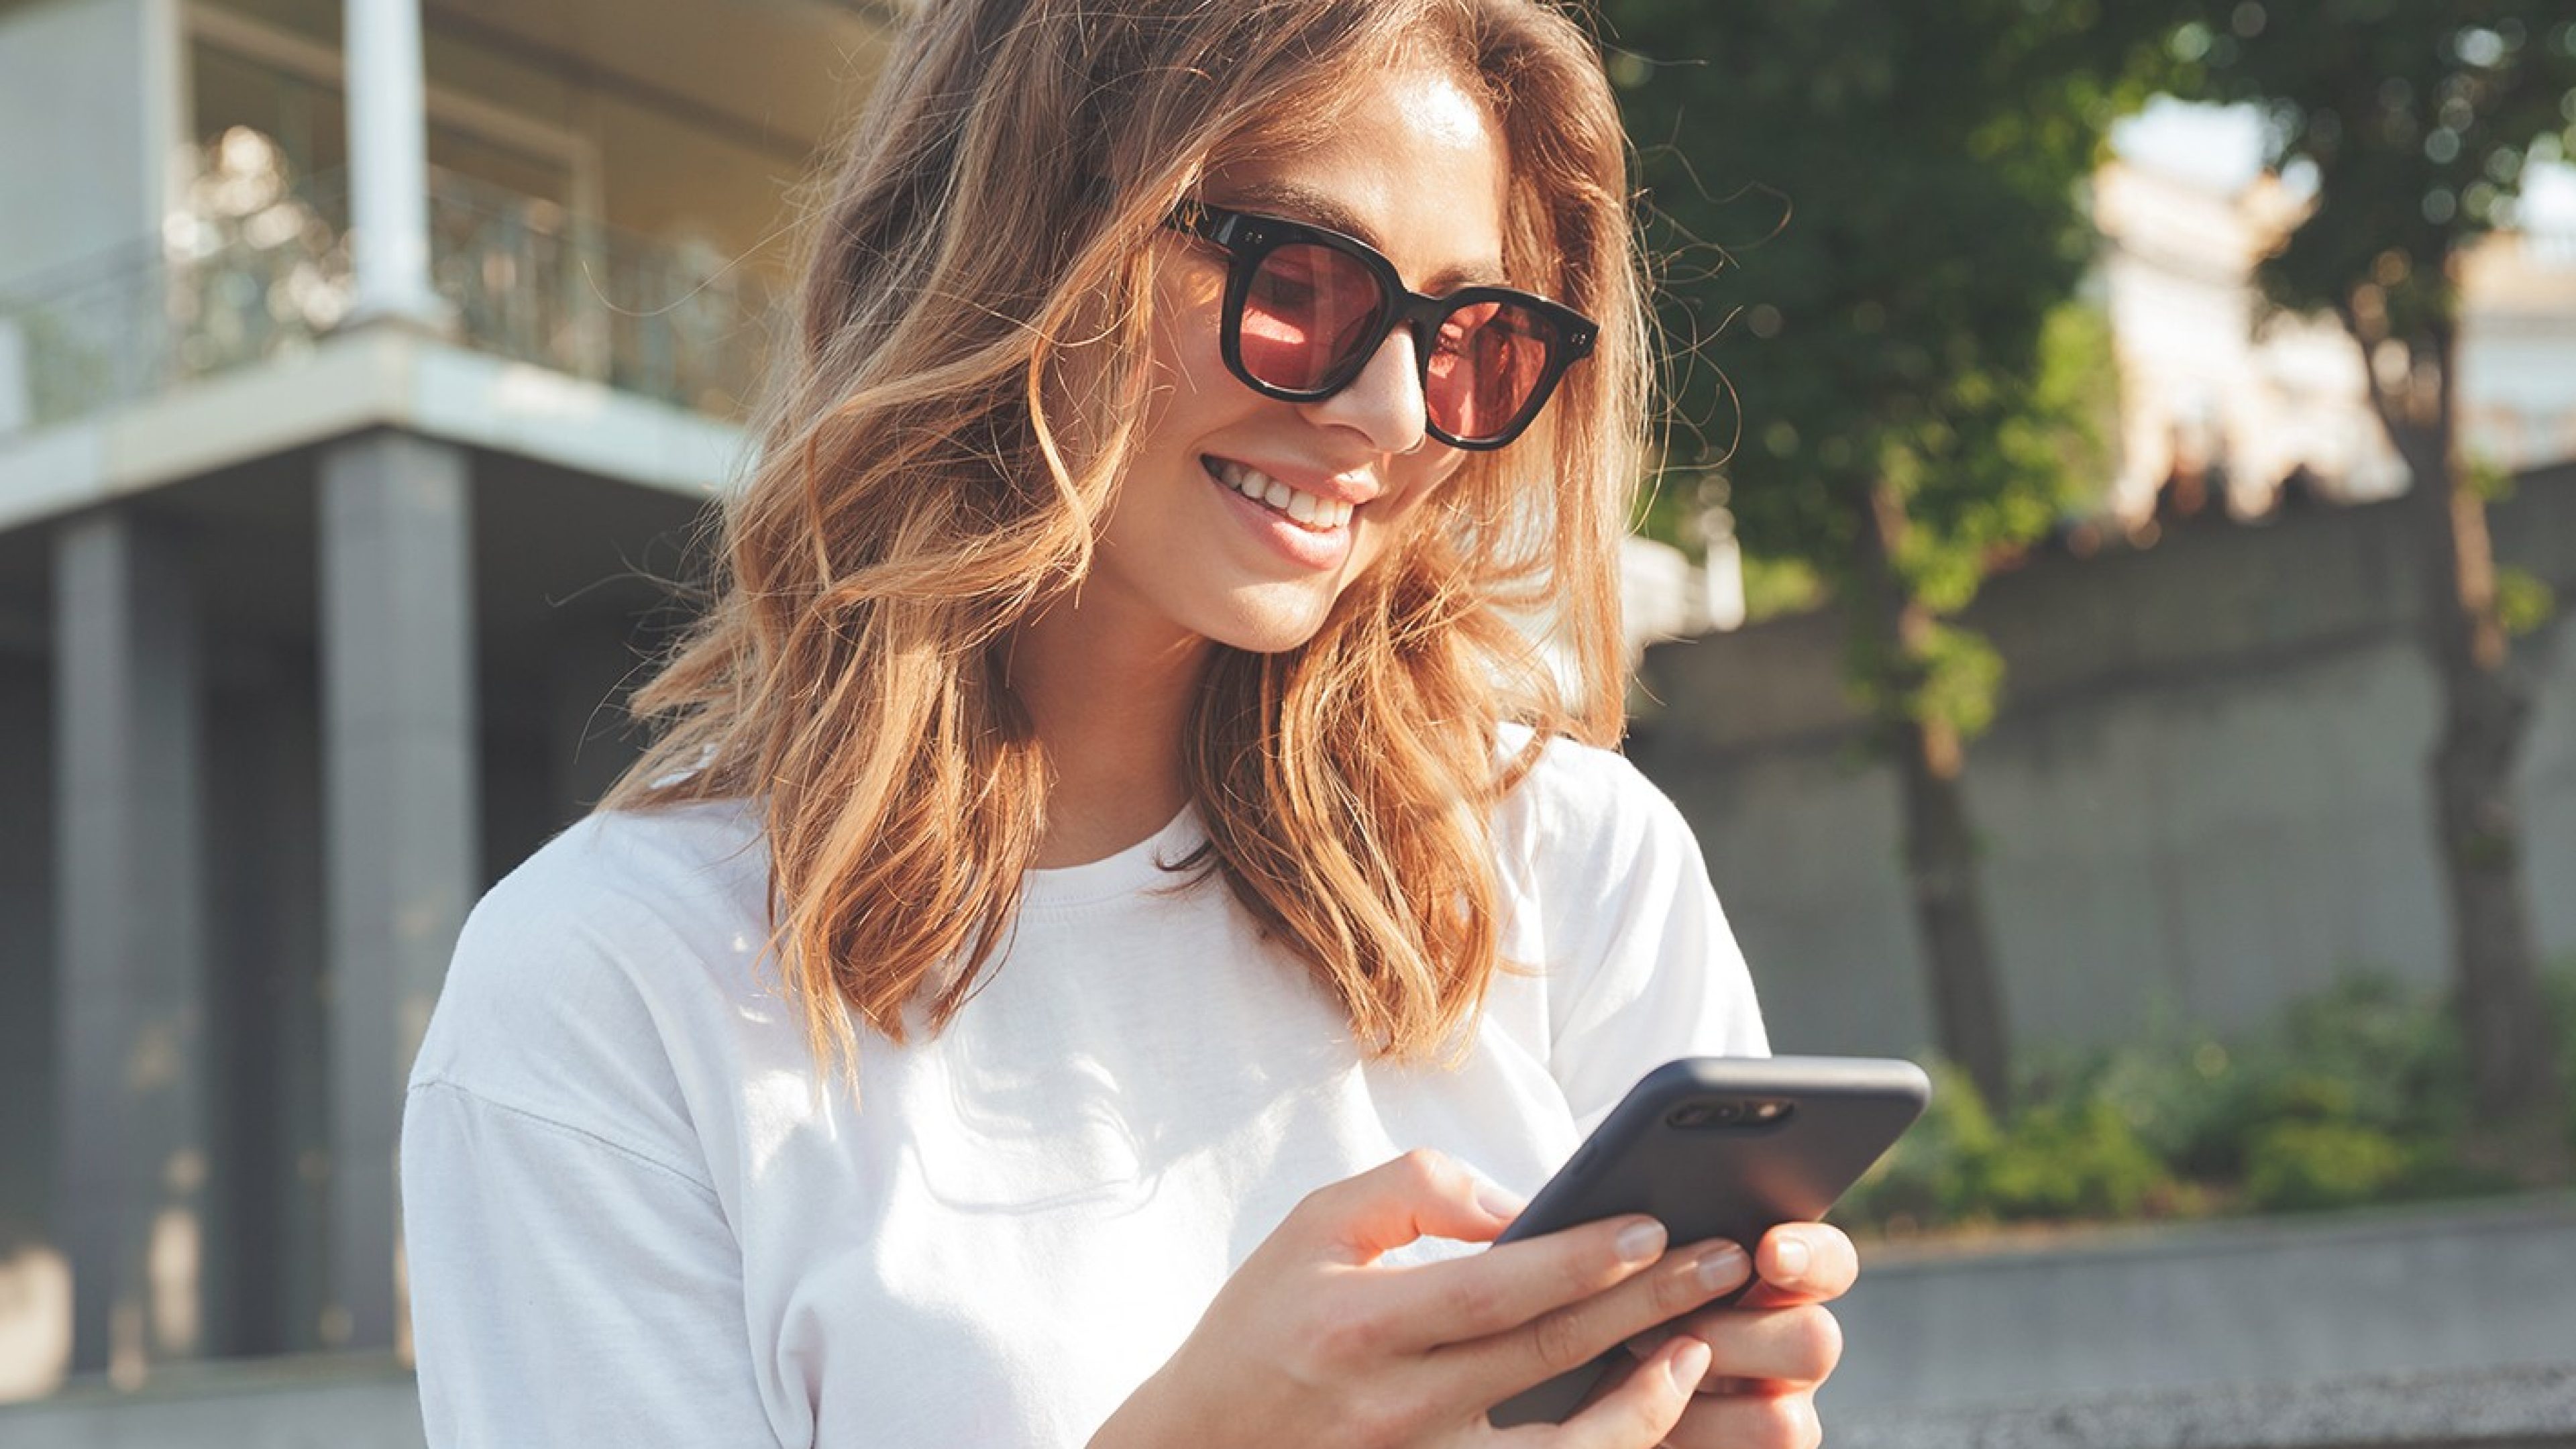 Une jeune femme portant des lunettes de soleil regarde son smartphone et sourit.